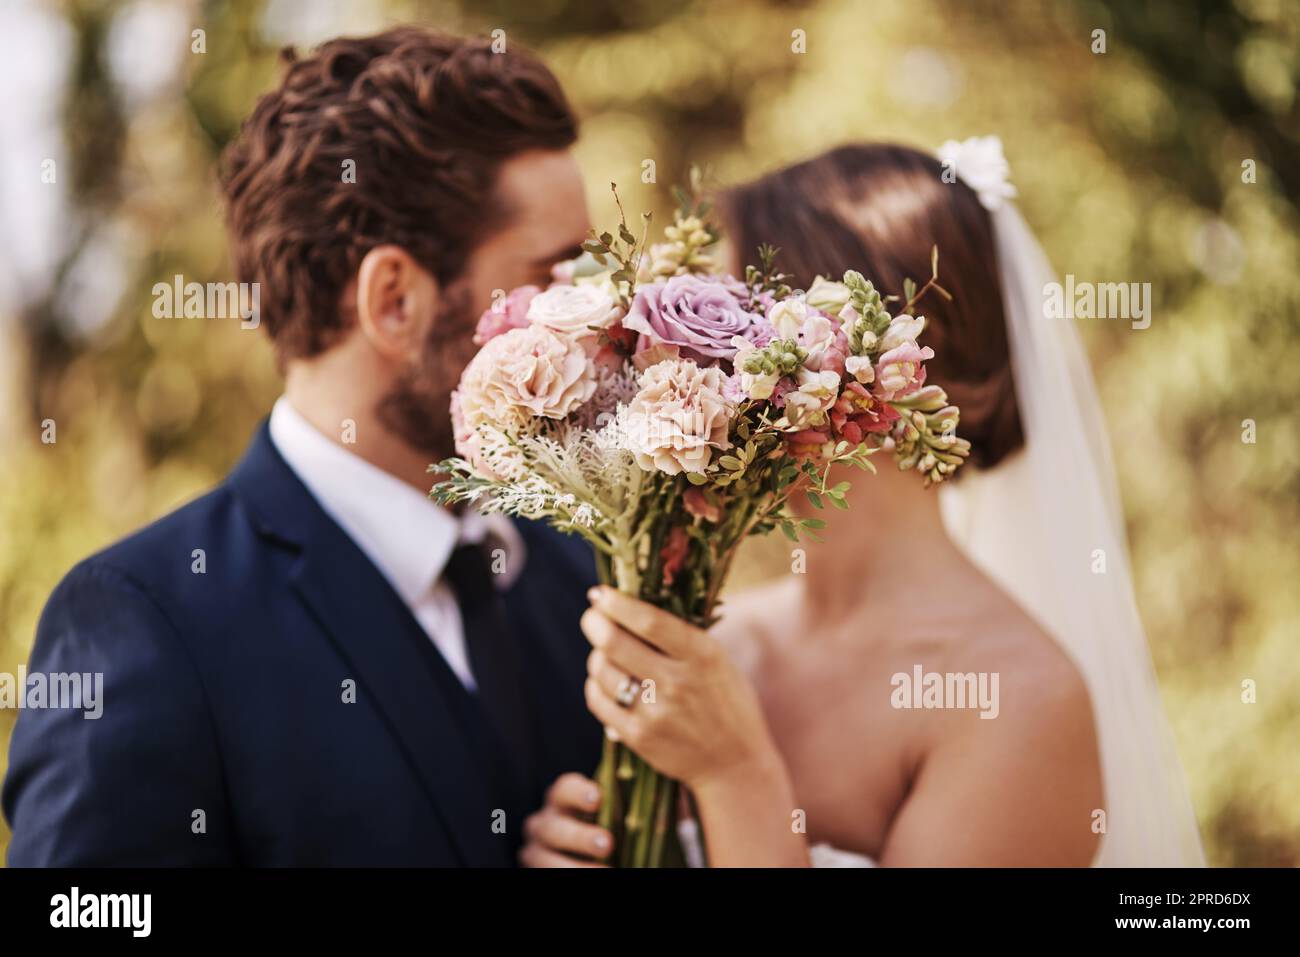 Ihre Liebe ist in voller Blüte. Ein unkenntlich frisch vermähltes Paar teilt einen intimen Moment, während sie draußen an ihrem Hochzeitstag steht. Stockfoto